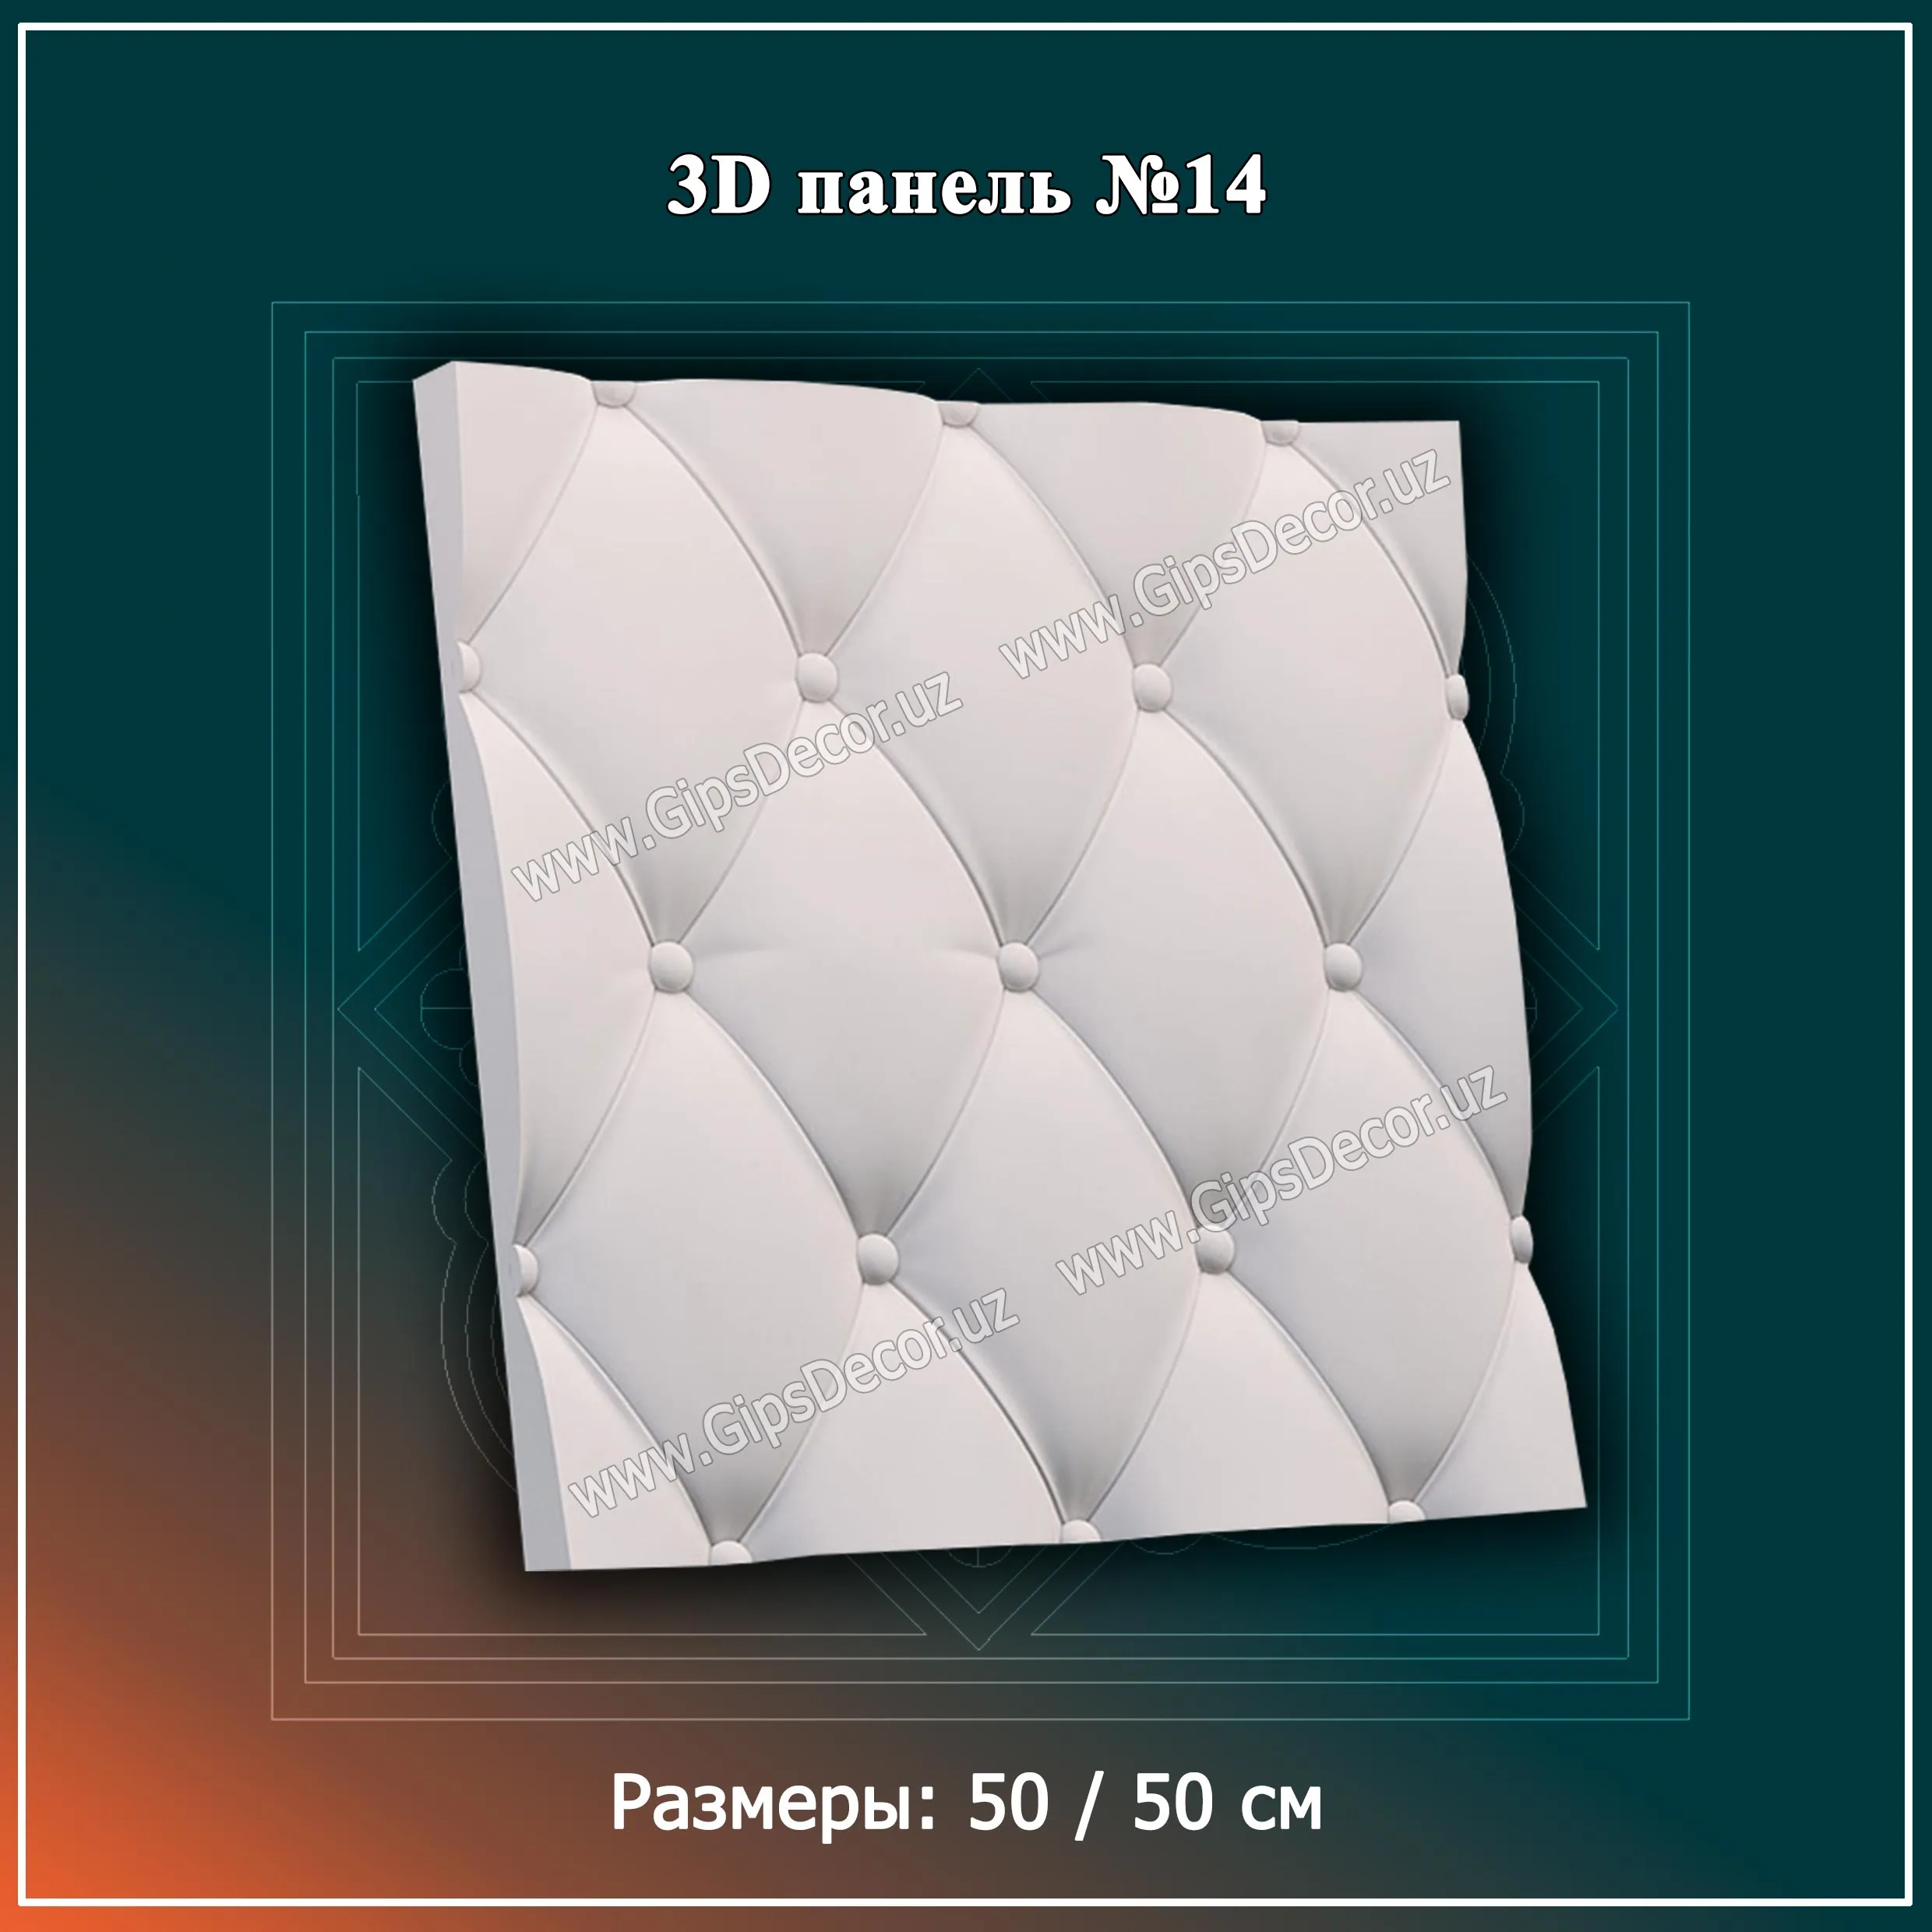 3D Панель №14 Размеры: 50 / 50 см#1